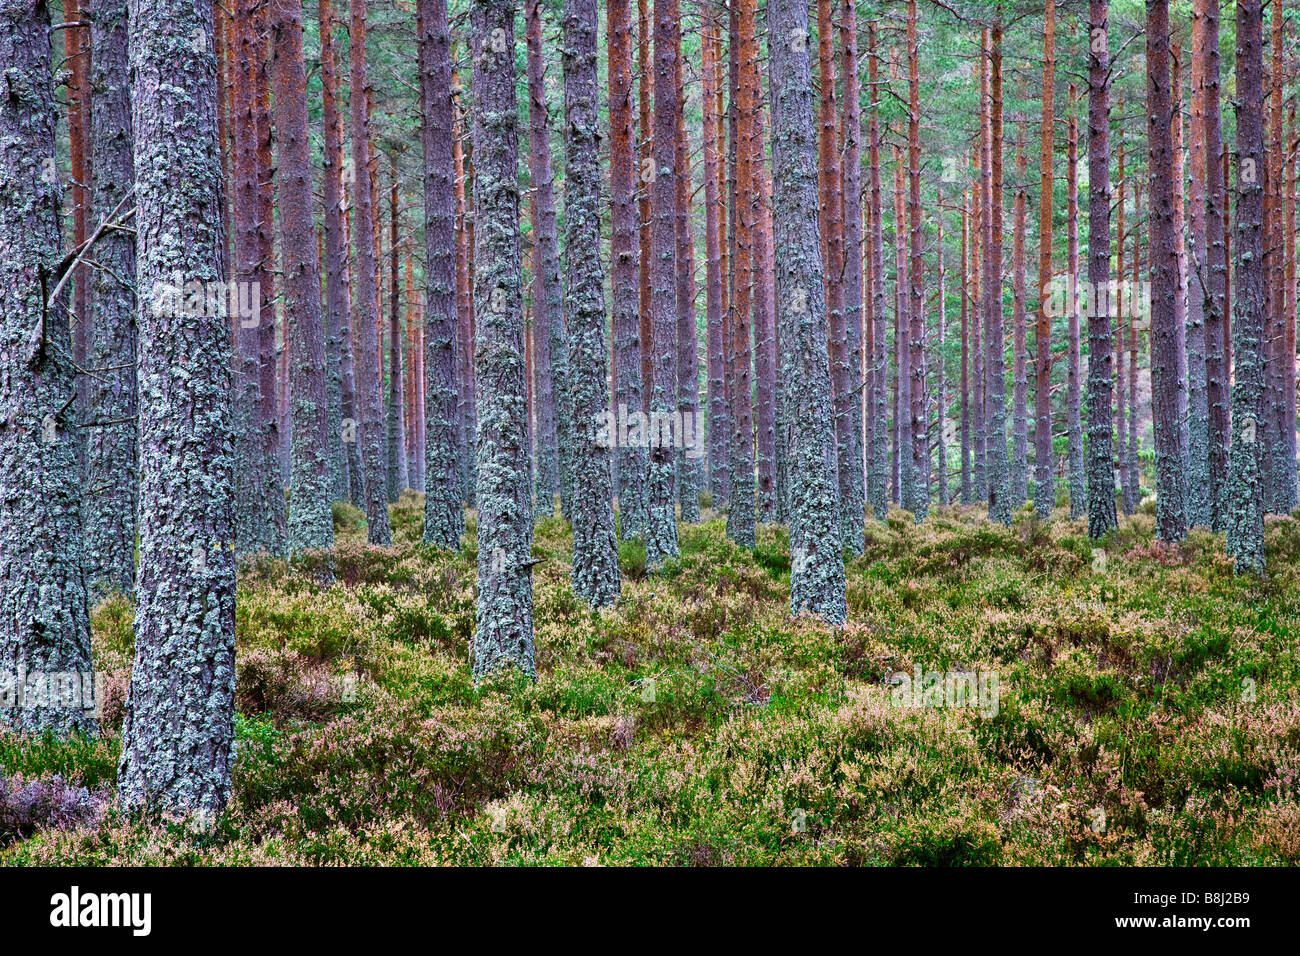 Nadelbäume in einer schottischen Plantage mit Moos und Heidekraut auf der Basis der Stämme Stockfoto